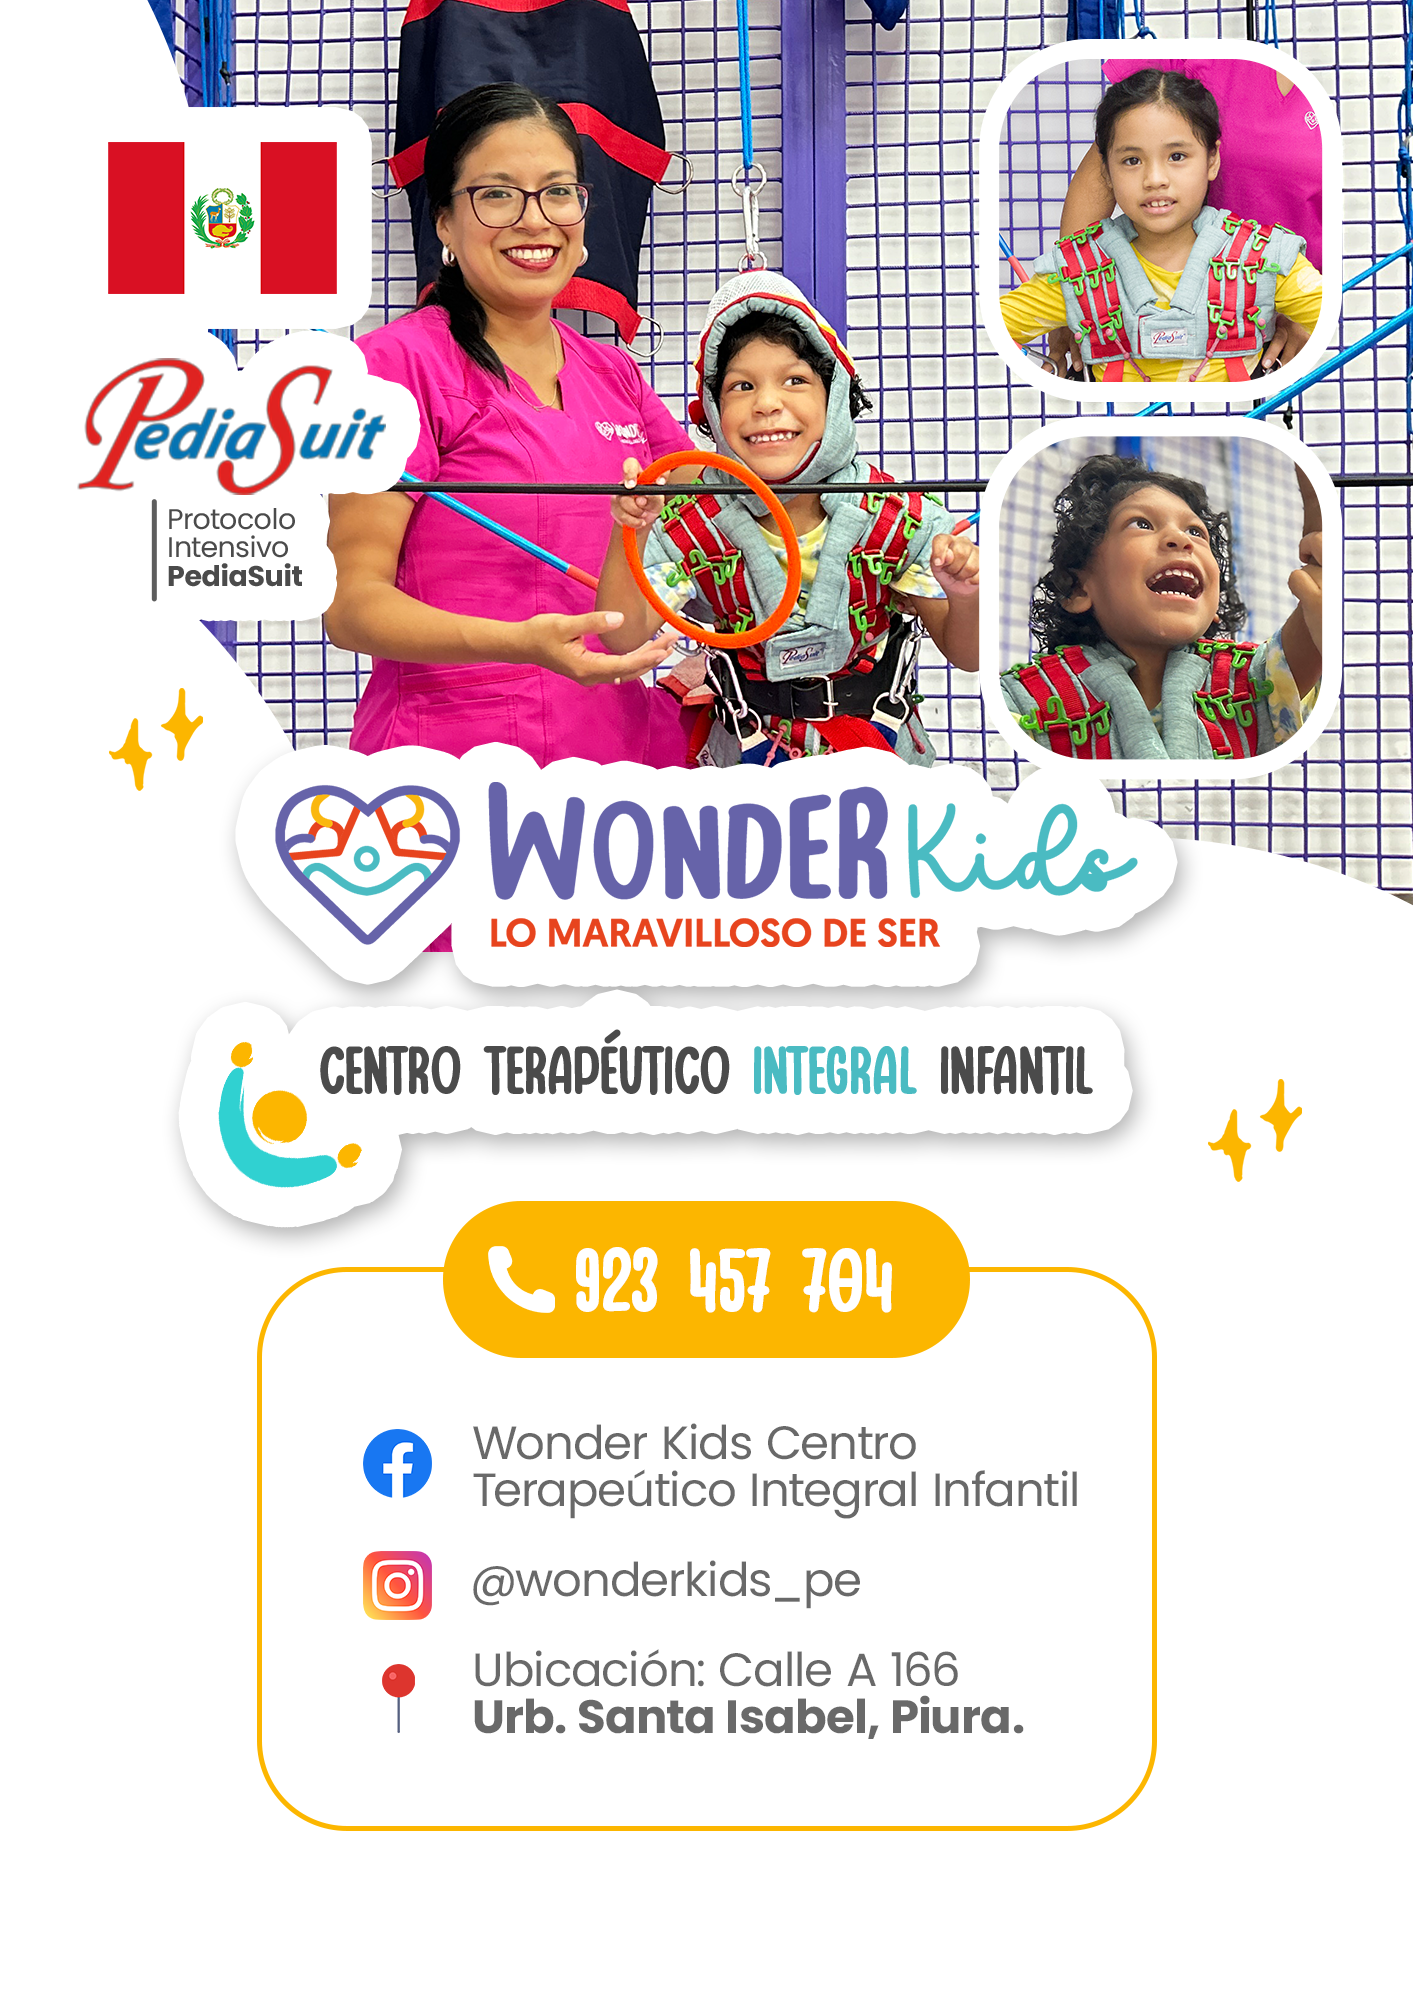 WonderKids Peru